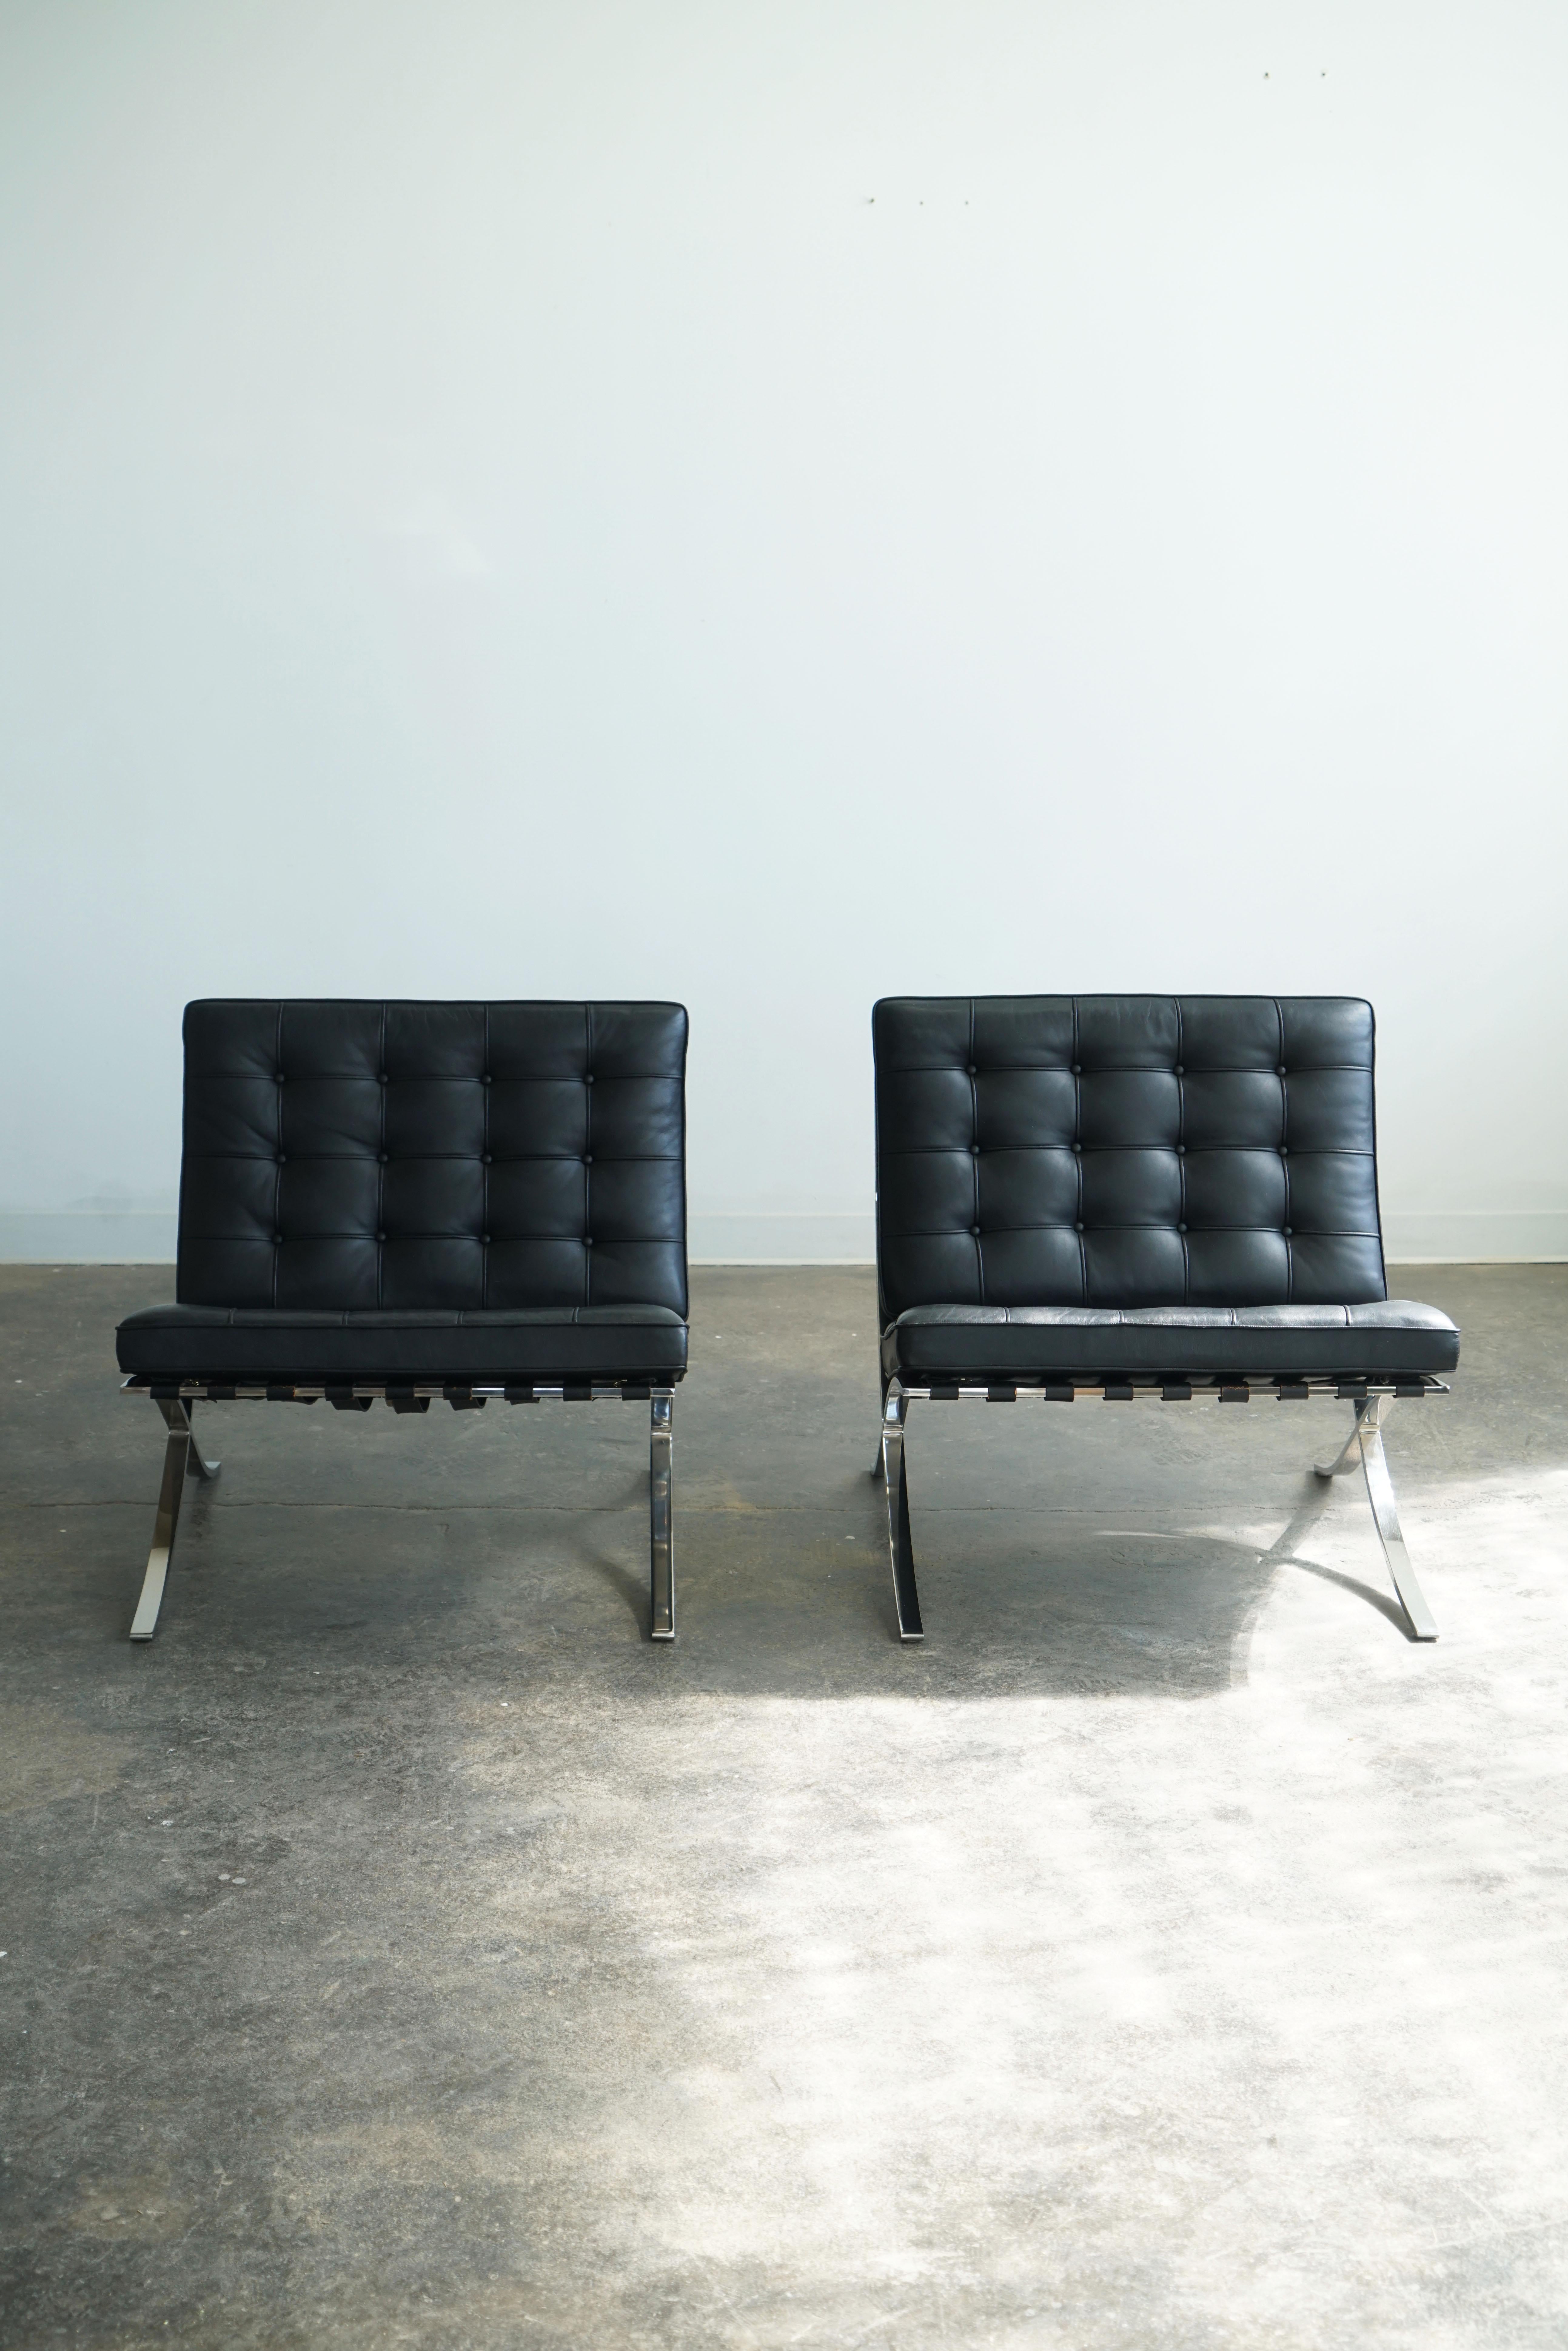 Knoll Barcelona Stühle, 2er Set.
Entworfen von Mies van der Rohe, ursprünglich im Jahr 1929.  
Schwarzes Leder.

Auf der Unterseite der Sitzkissen befinden sich Knoll-Herstellerschilder mit dem Datum 1987.

Der Barcelona Chair, einer der